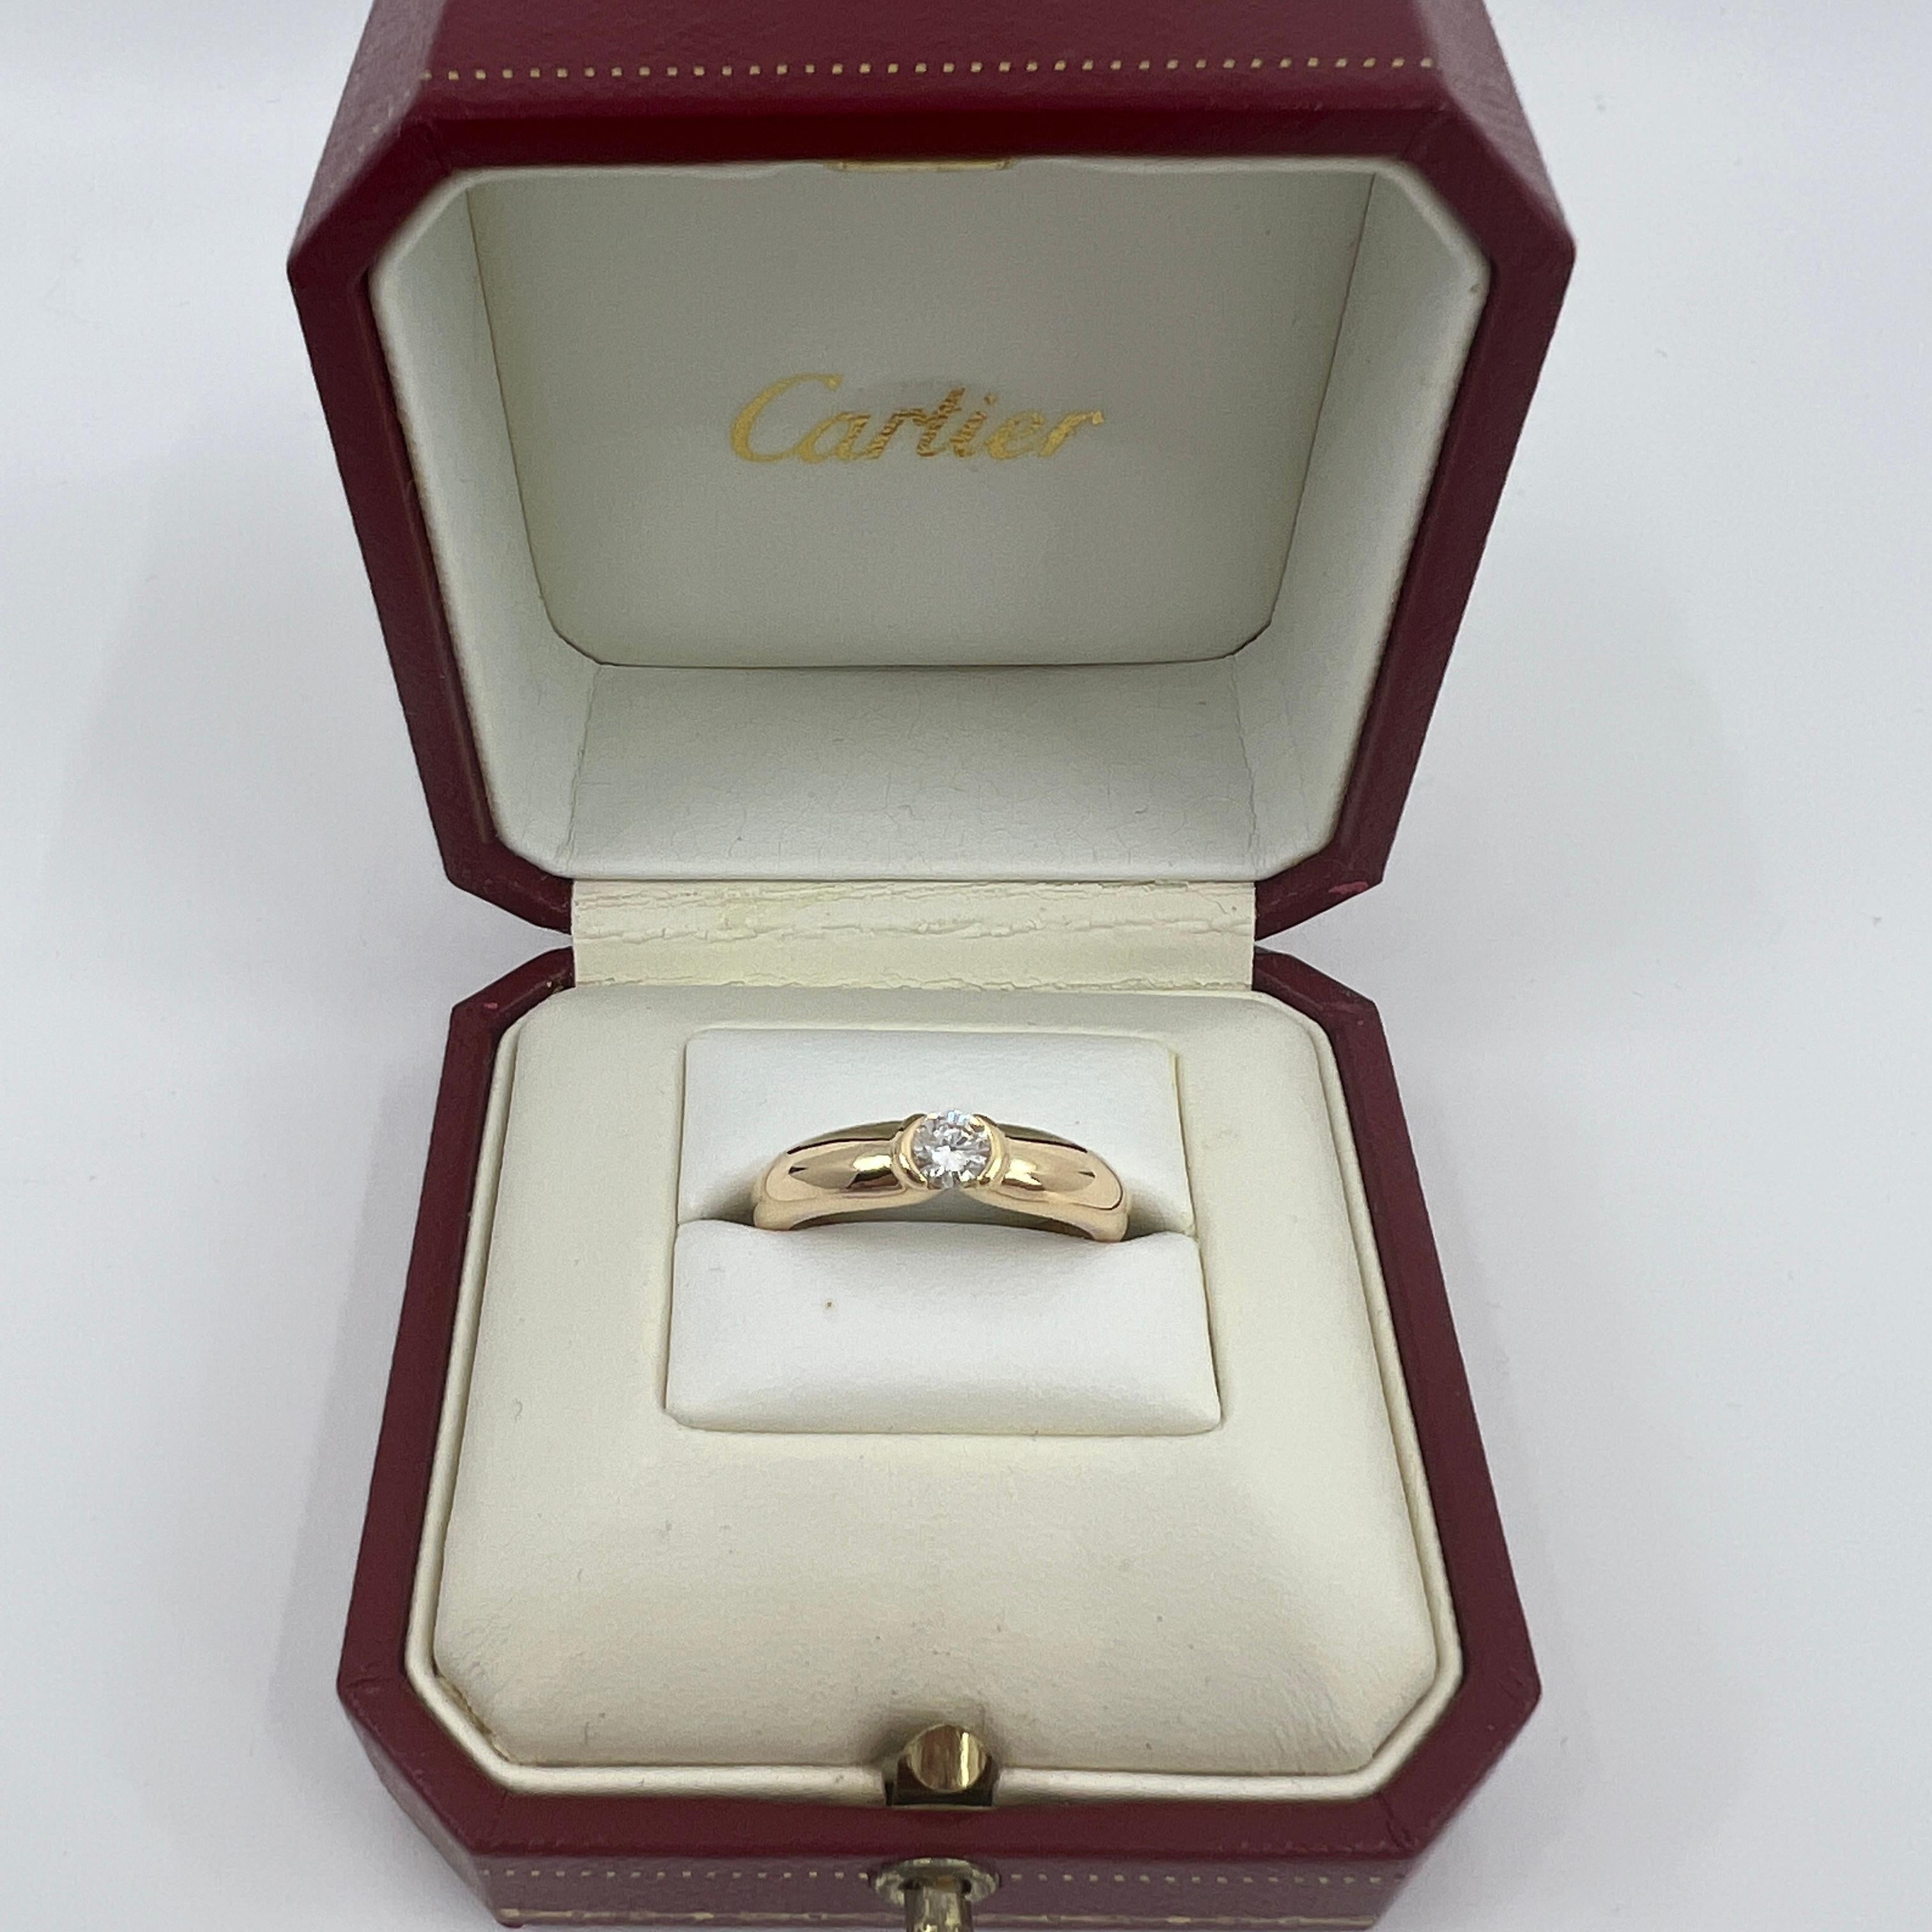 Vintage Cartier Round Brilliant Diamond 18k Yellow Gold Solitaire Ring.

Superbe bague en or jaune sertie d'un diamant rond de 0.30ct. Couleur E, pureté VVS1, excellente taille ronde et brillante. Les maisons de haute joaillerie comme Cartier